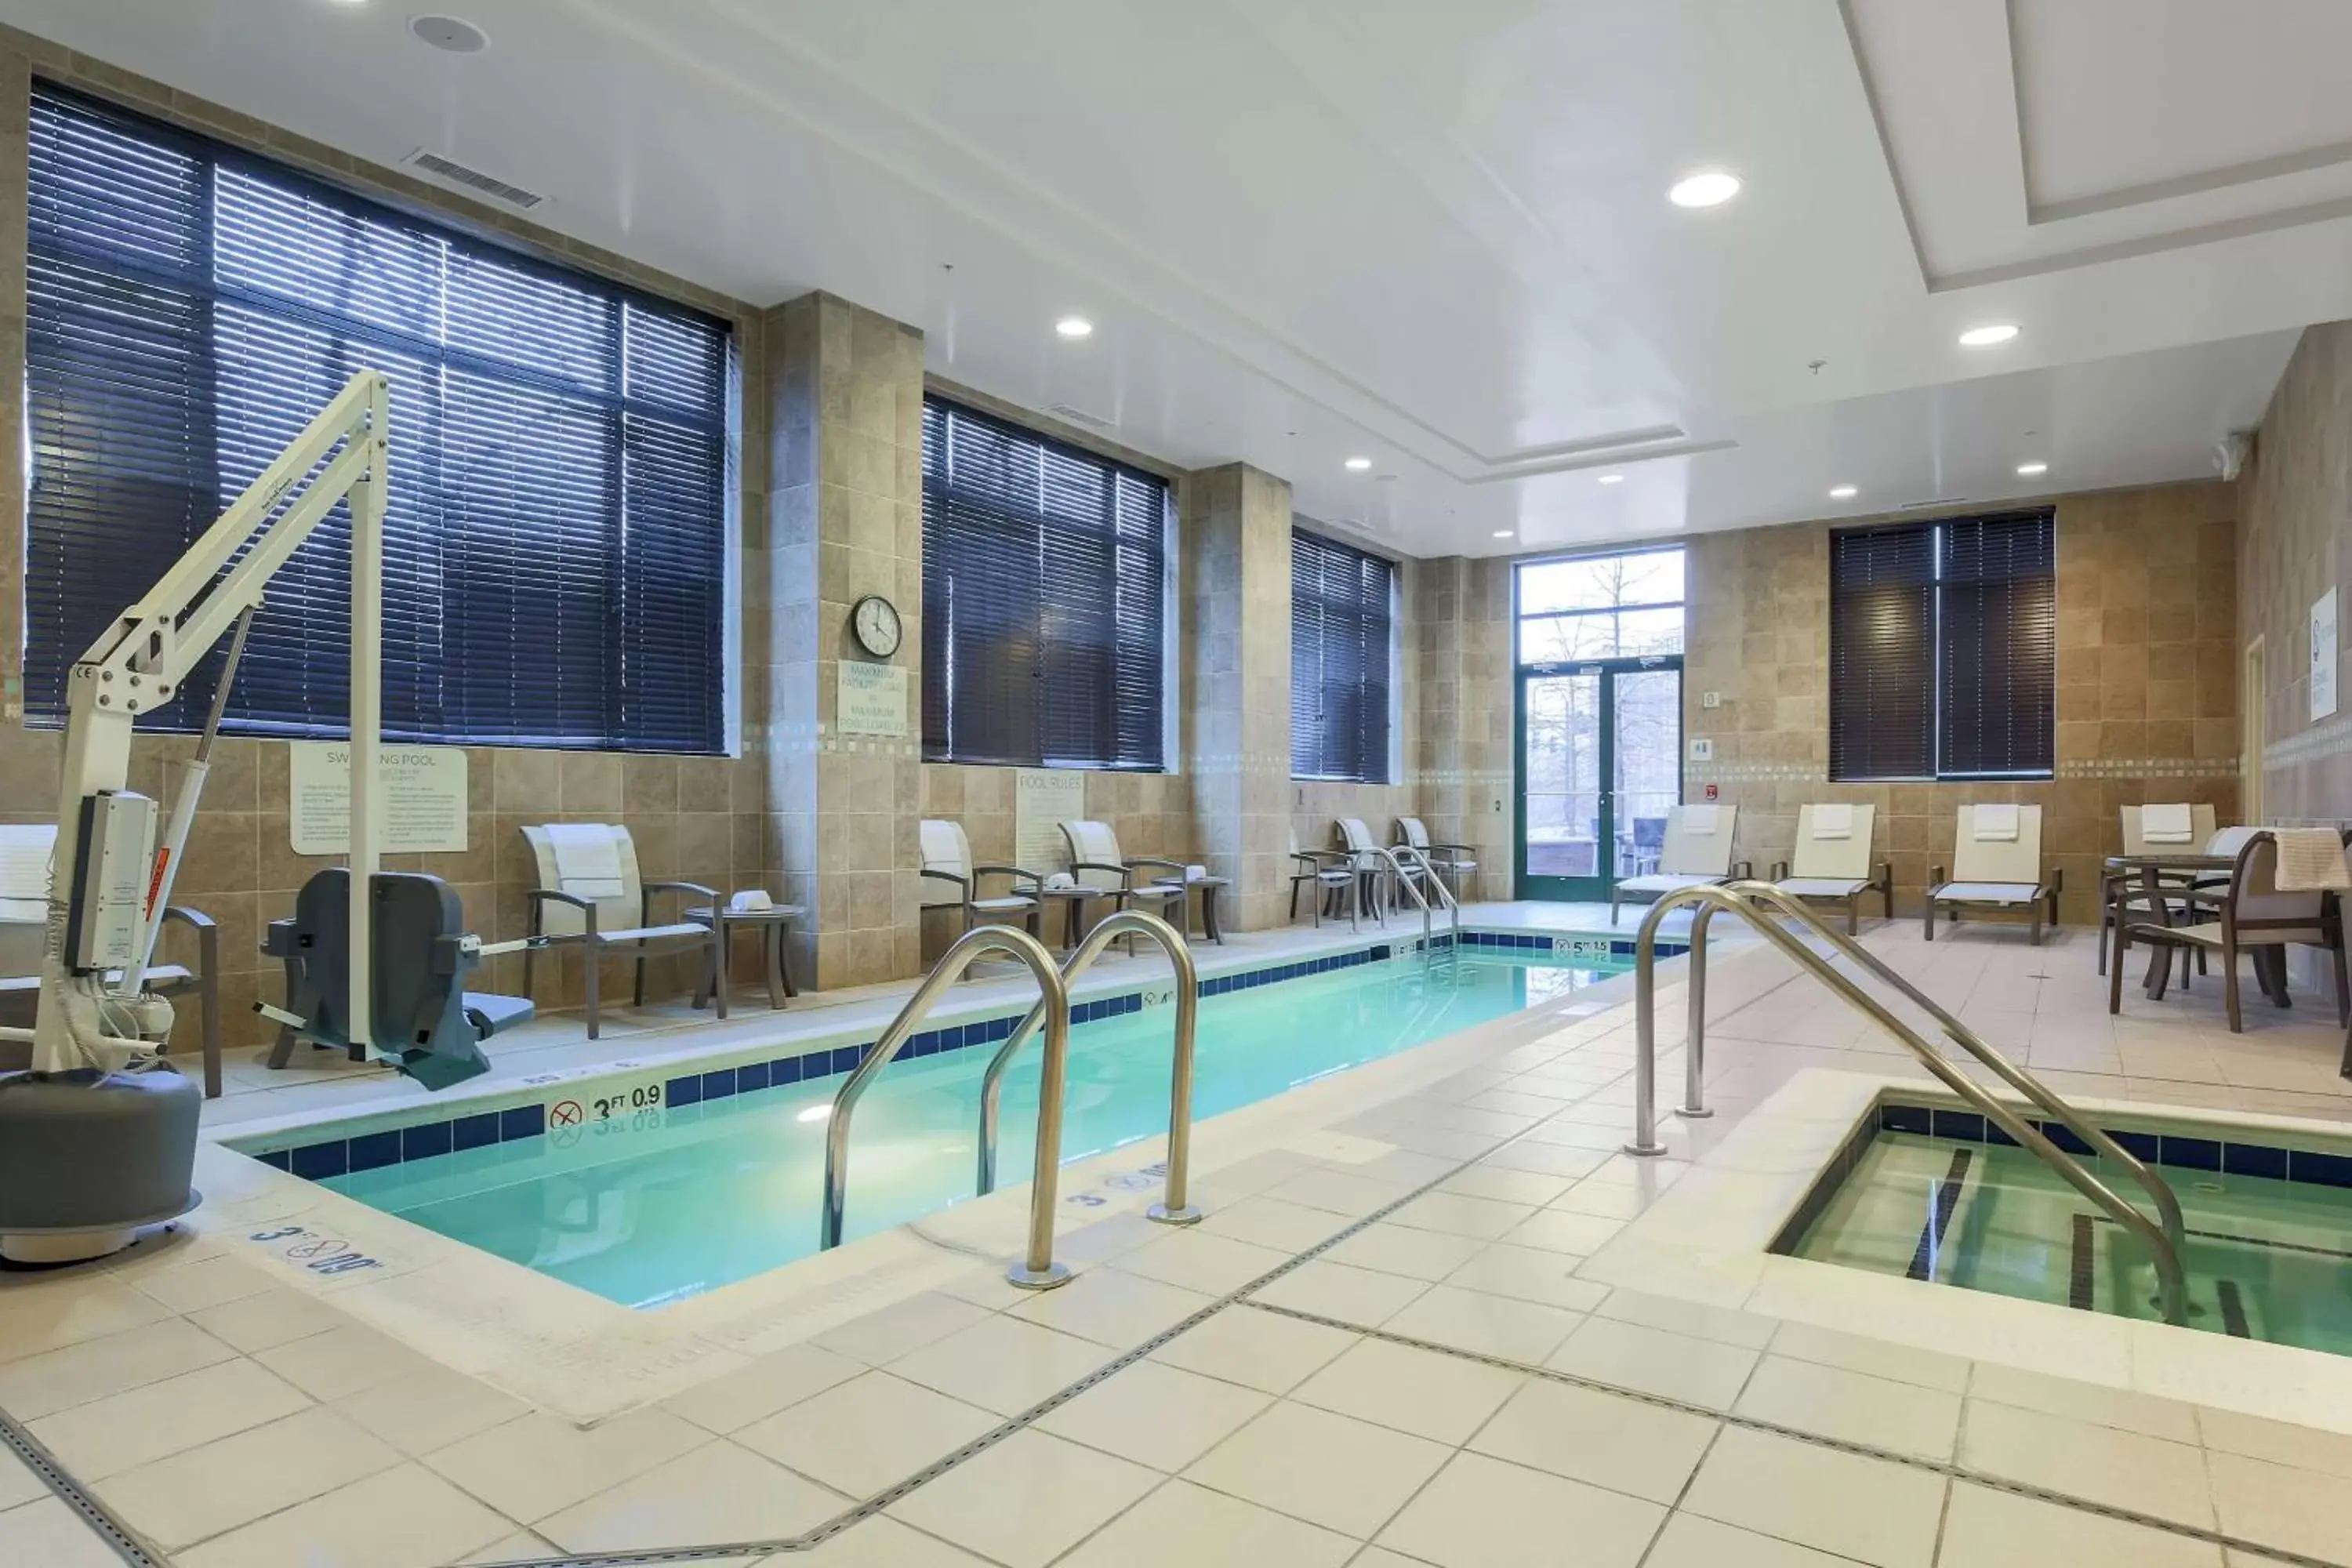 Hot Tub, Swimming Pool in Hilton Garden Inn Shirlington